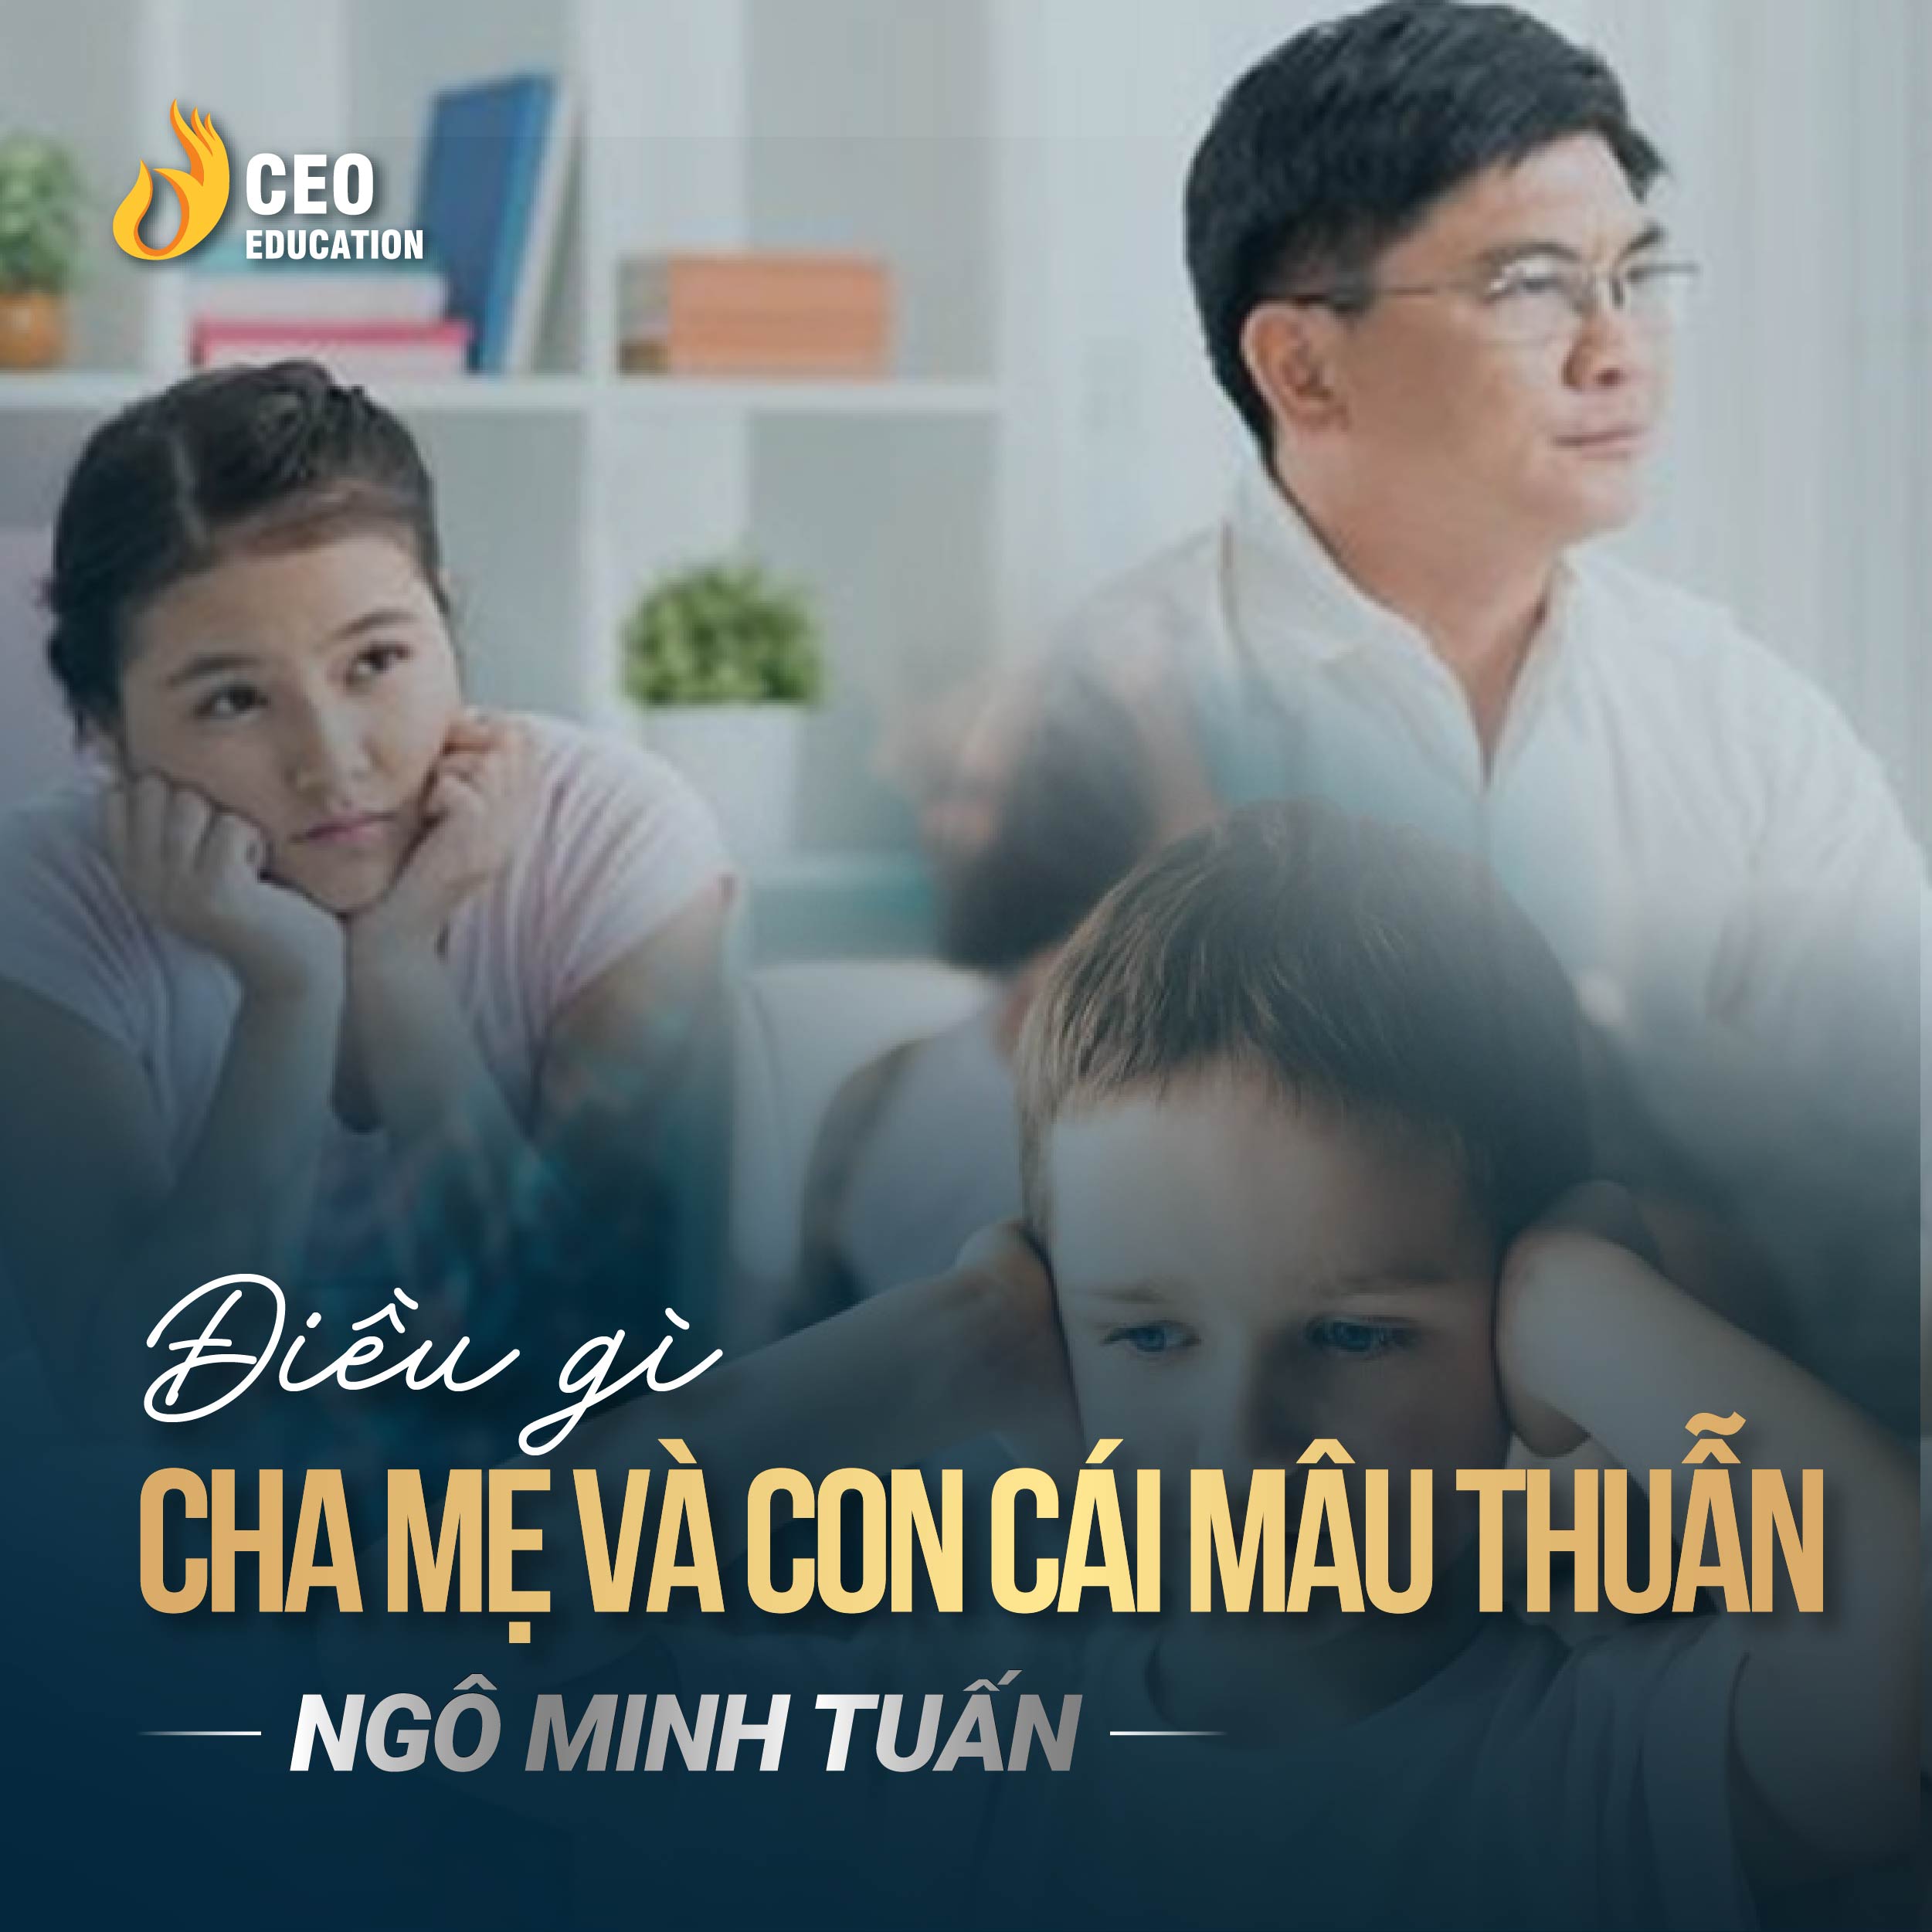 Điều gì đã khiến cha mẹ và con cái xảy ra mâu thuẫn | Ngô Minh Tuấn | Học Viện CEO Việt Nam